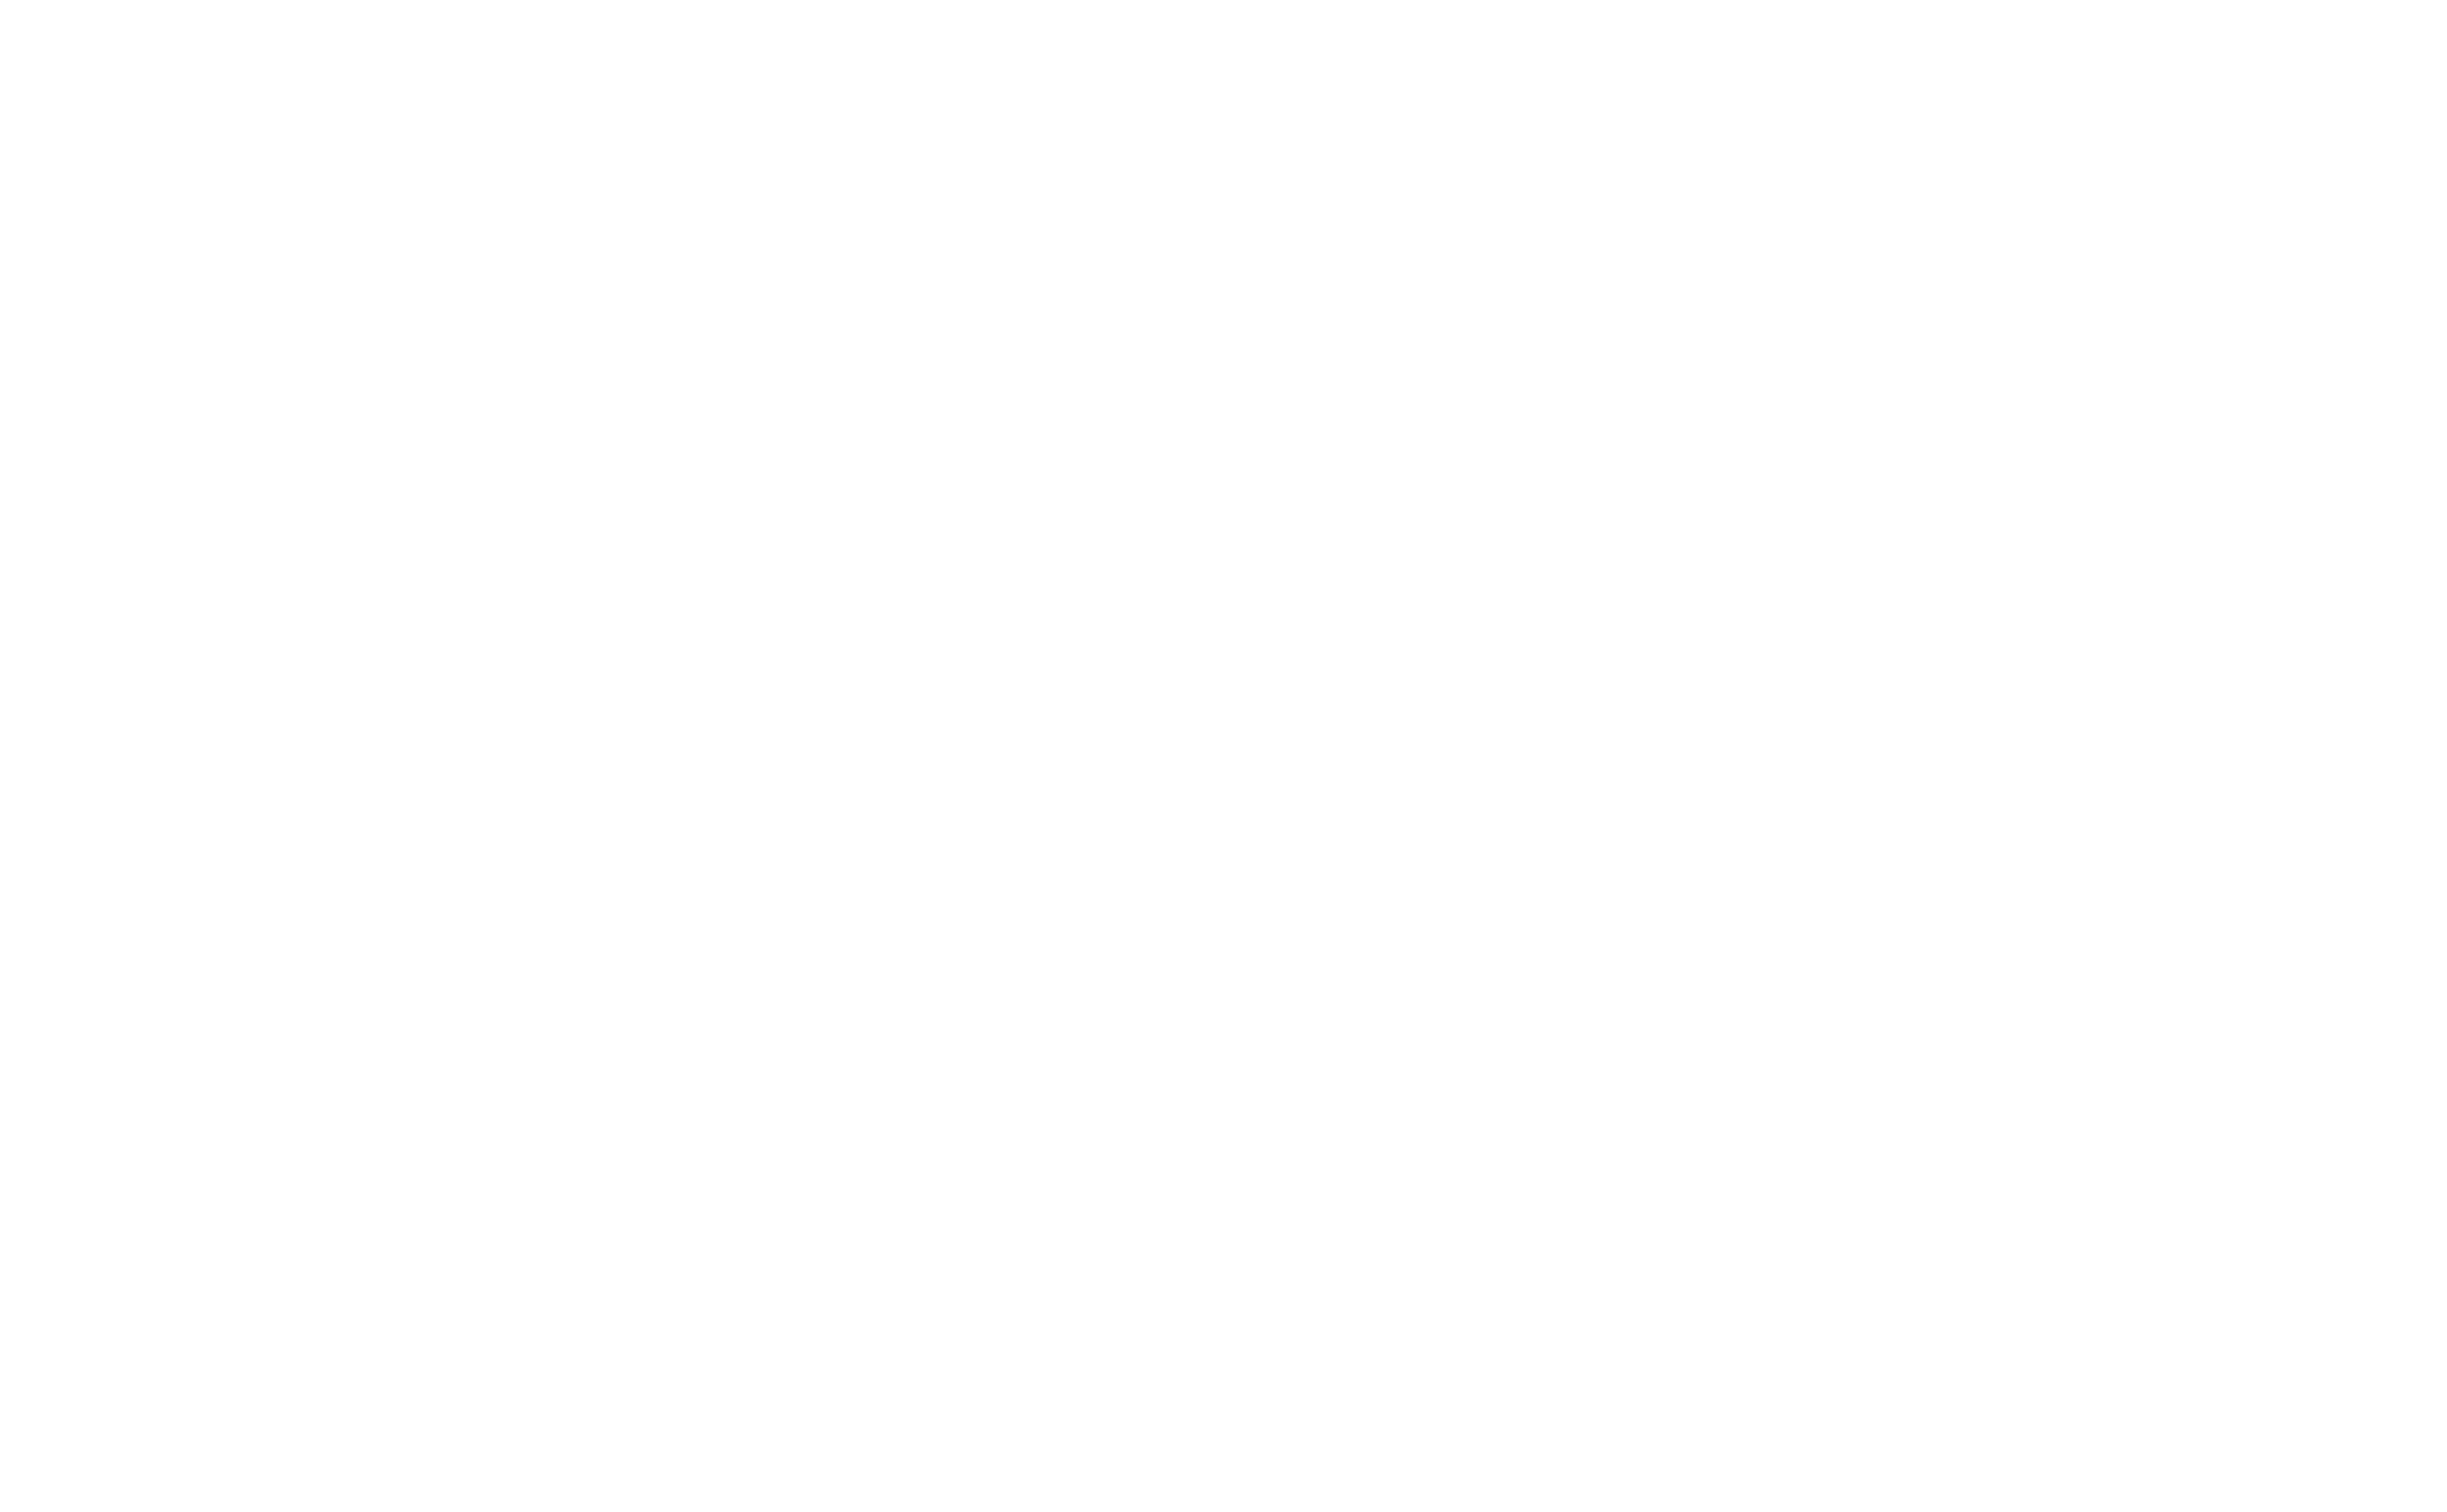 Estrela Imobiliária - CRECI: 22965-J